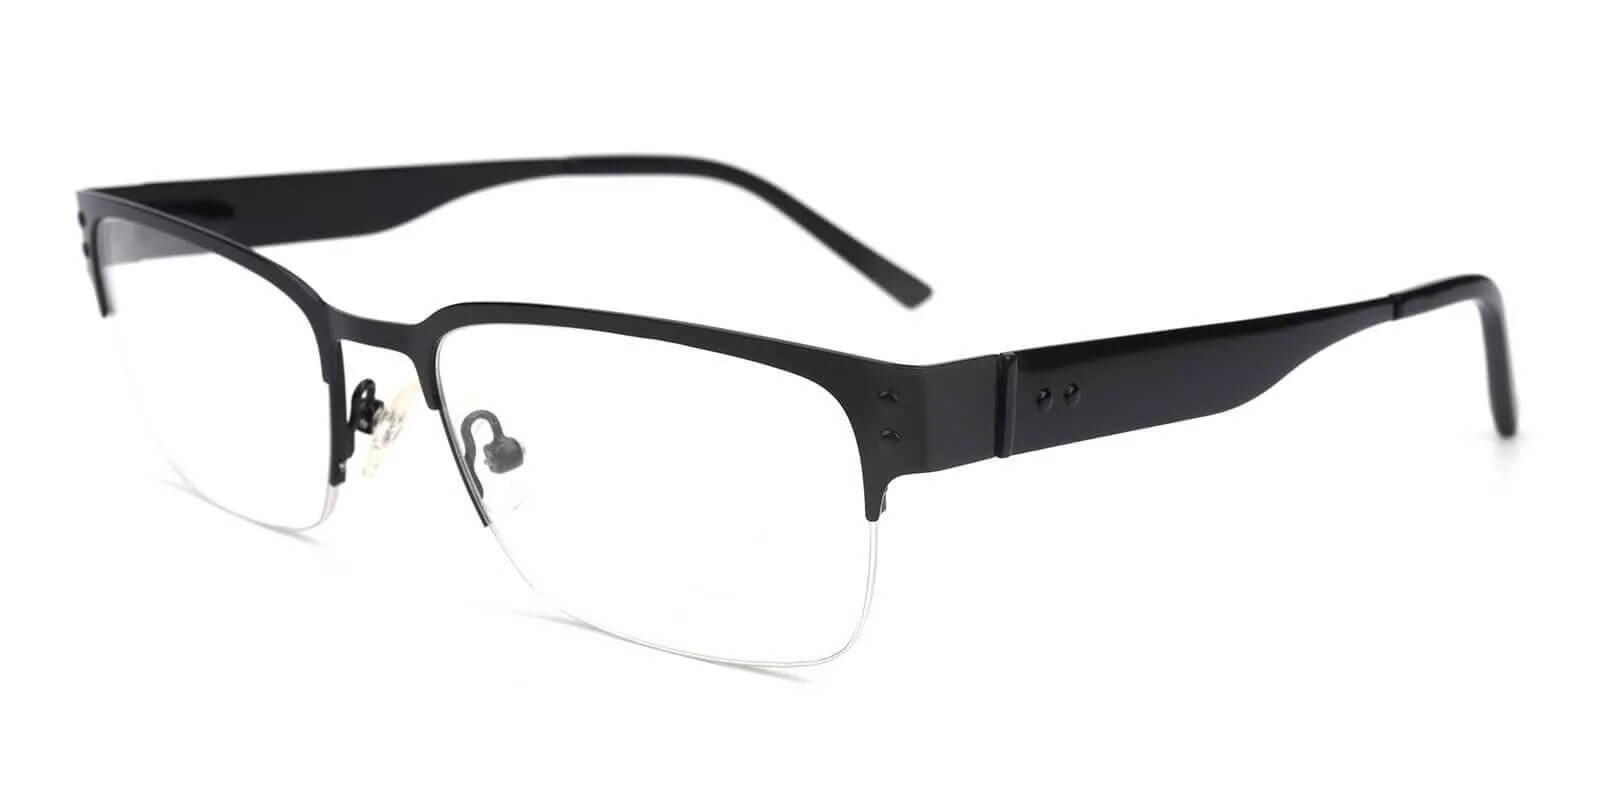 Levi Black Metal Eyeglasses , NosePads Frames from ABBE Glasses